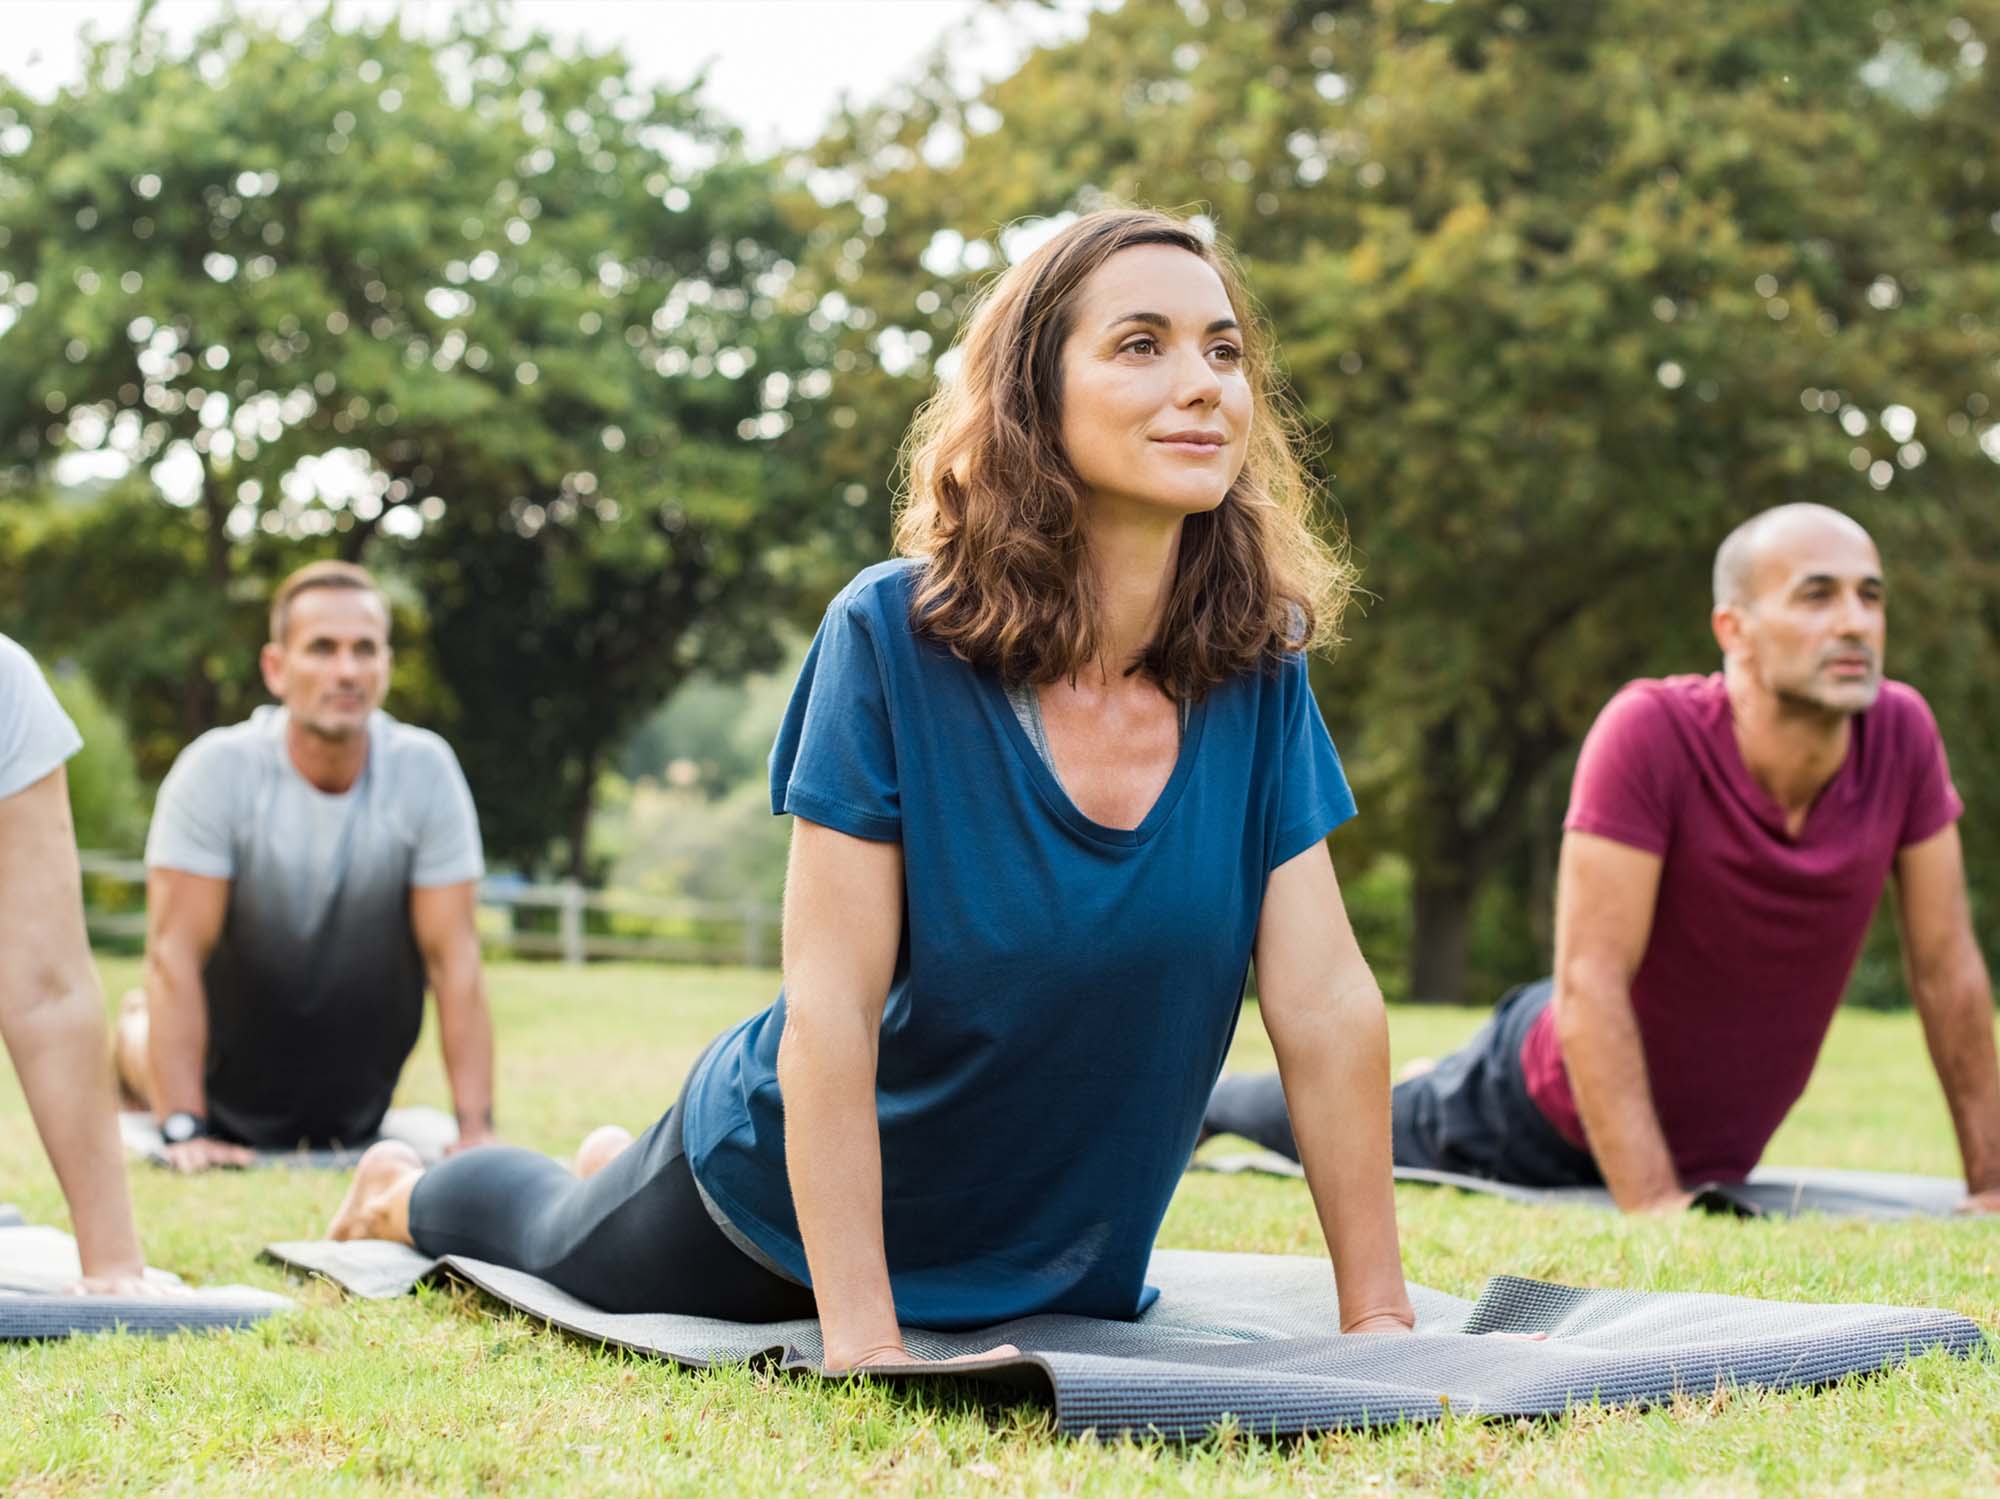 Foto: iStock / Ridofranz; Frauen und Männer machen Yoga auf einer Matte im Park